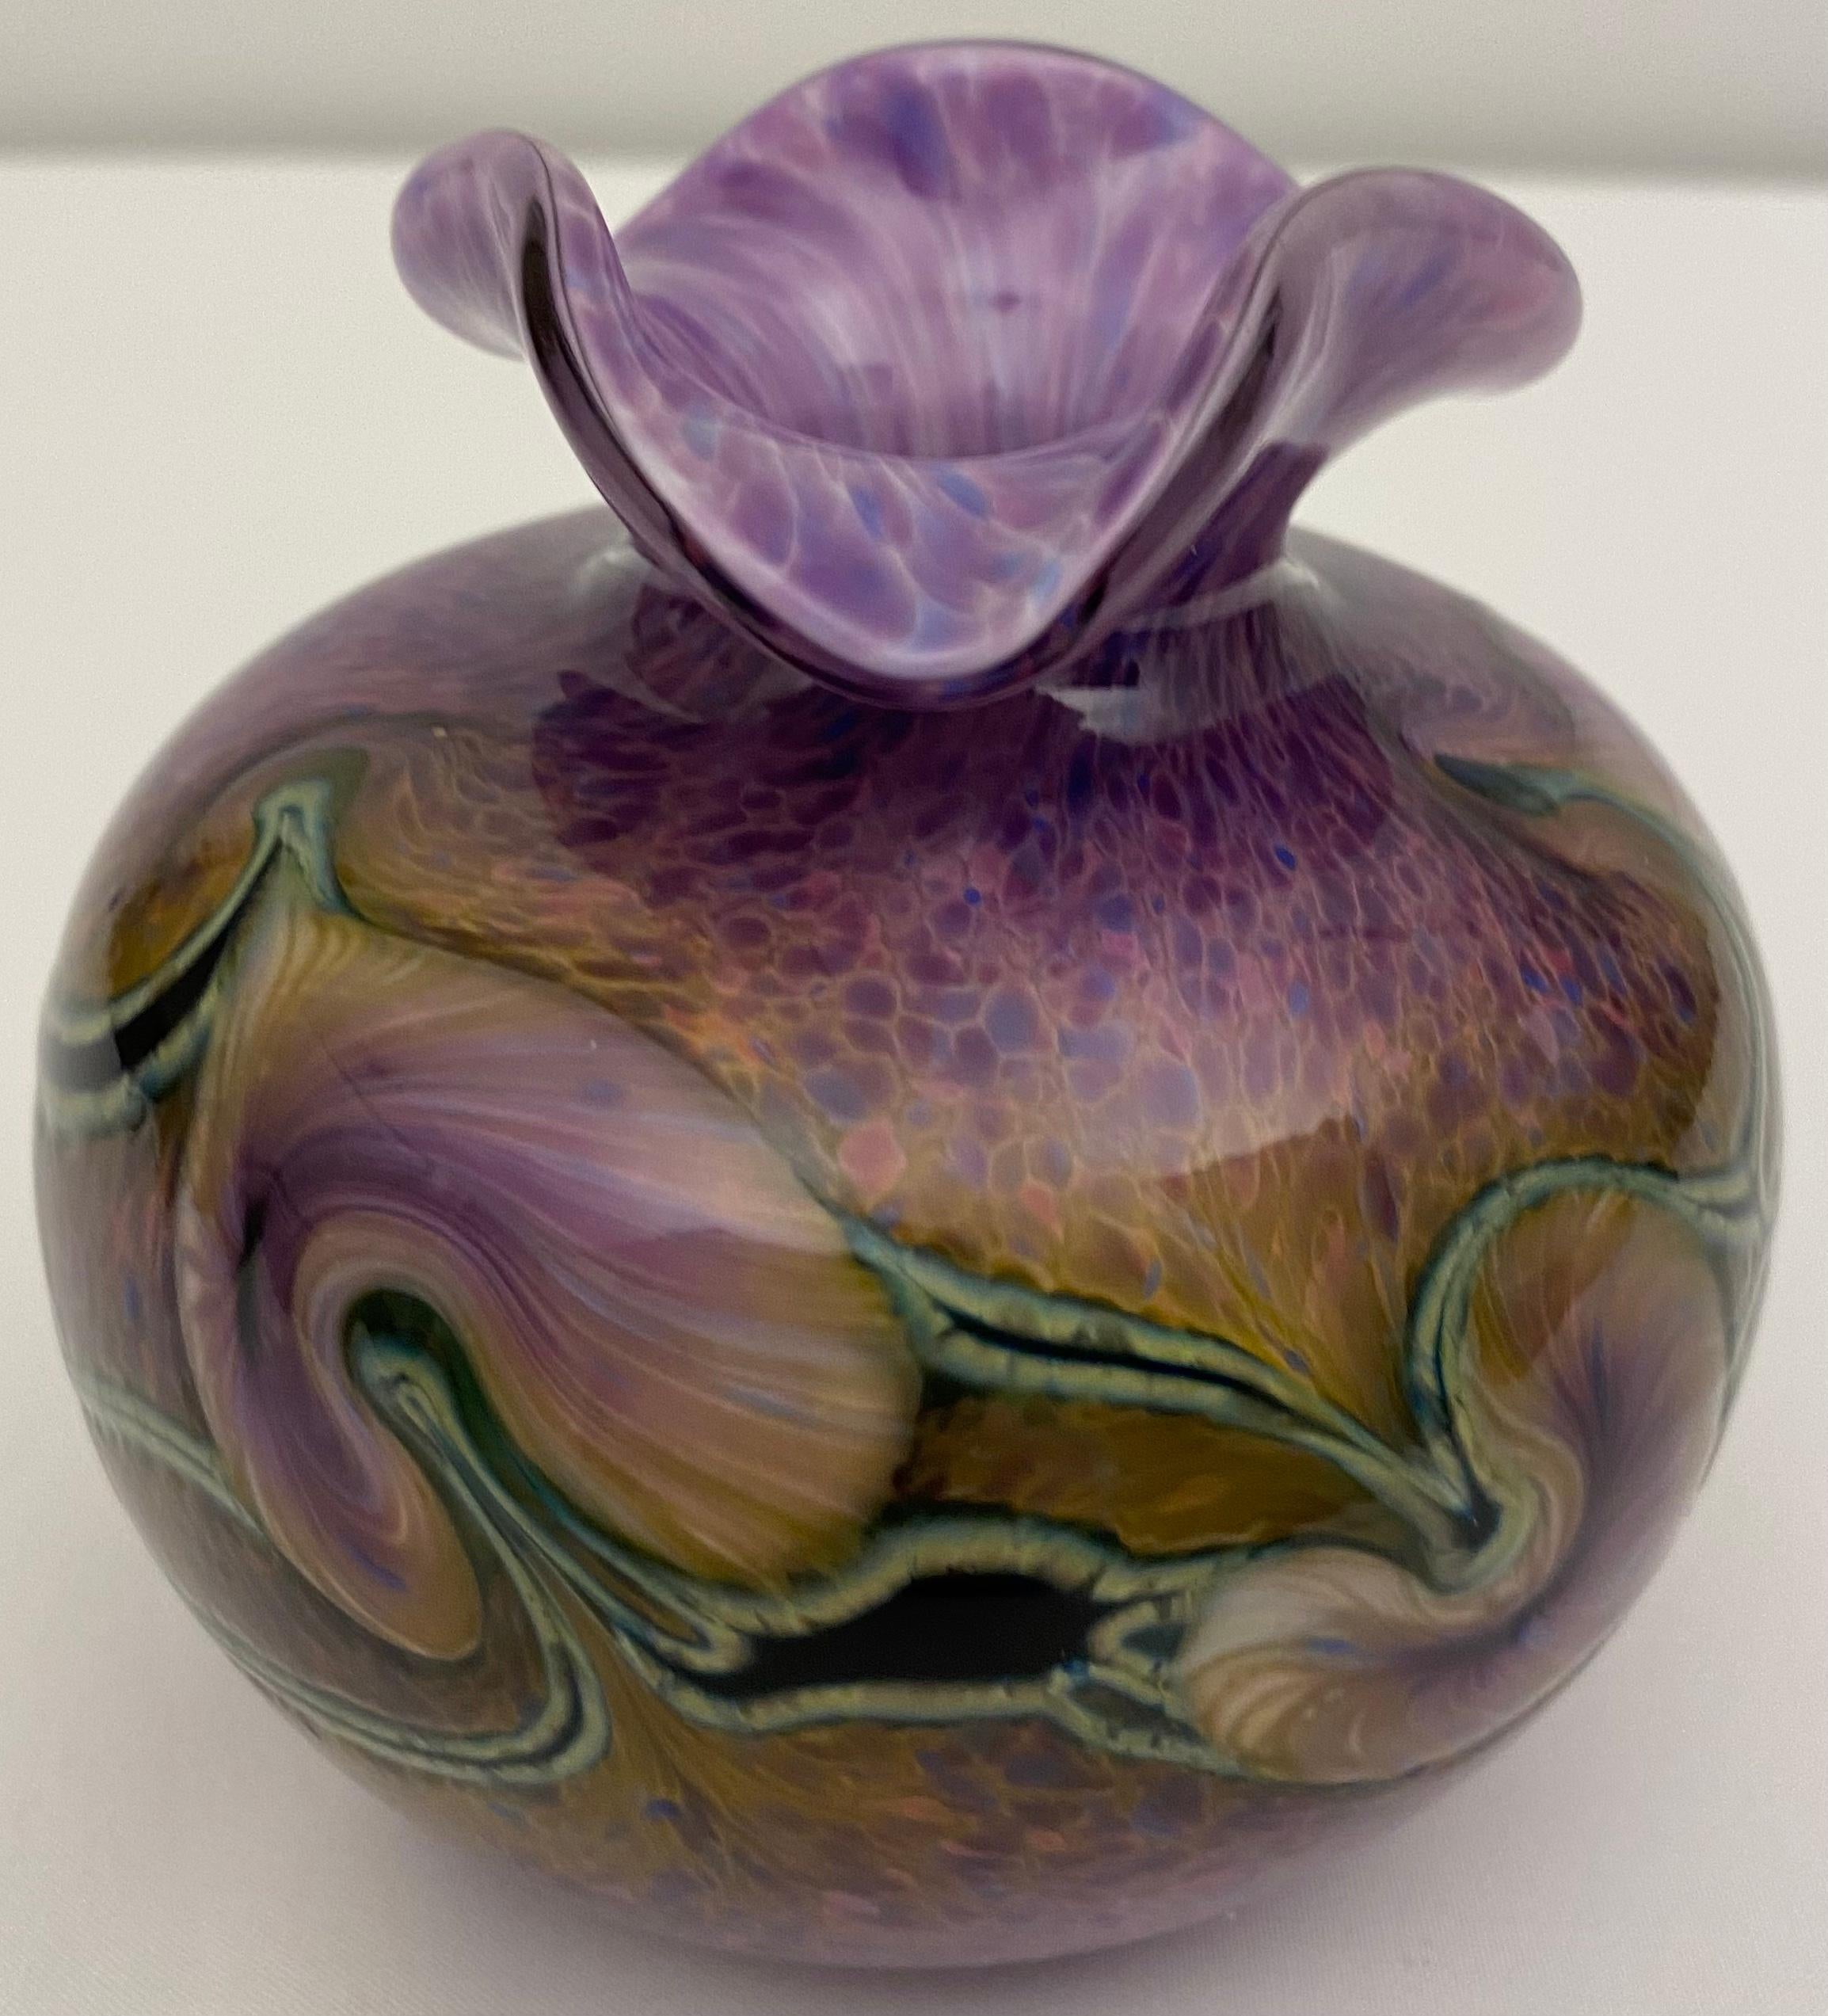 Schöne runde Vase aus Murano-Glas. Oben sind die Ränder wellenförmig nach außen gewölbt. Die Basis ist weiß mit kleinen Schattierungen von Lila, Blau und Rosa. Die Farben gehen von dunkleren Farben im unteren Bereich zu etwas helleren Tönen im